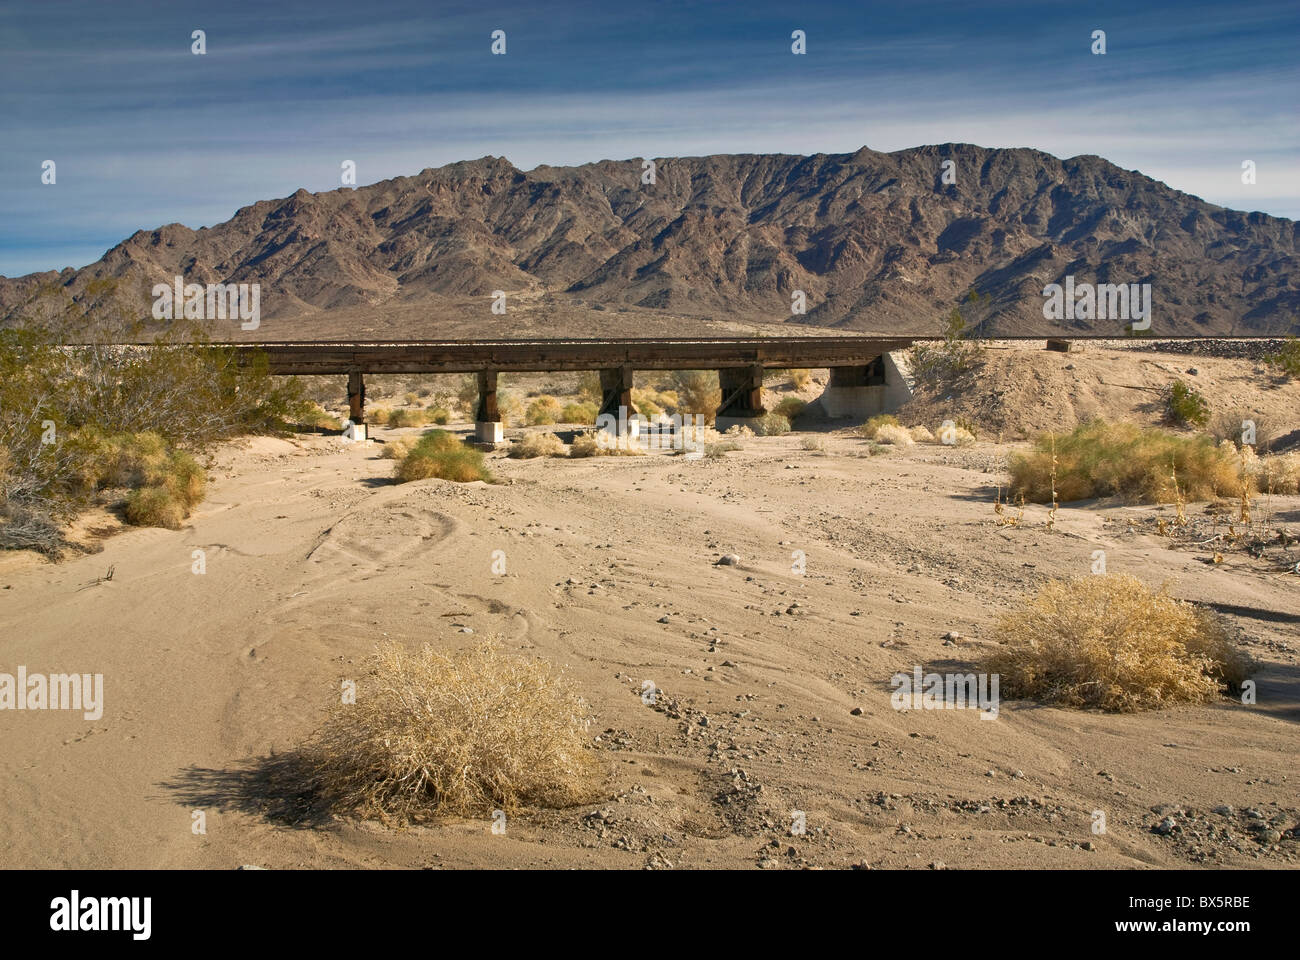 Pont ferroviaire sur la route de Cadix, Arroyo, navire Montagnes en dist, sentiers de Mojave National Monument, désert de Mojave, Californie, USA Banque D'Images